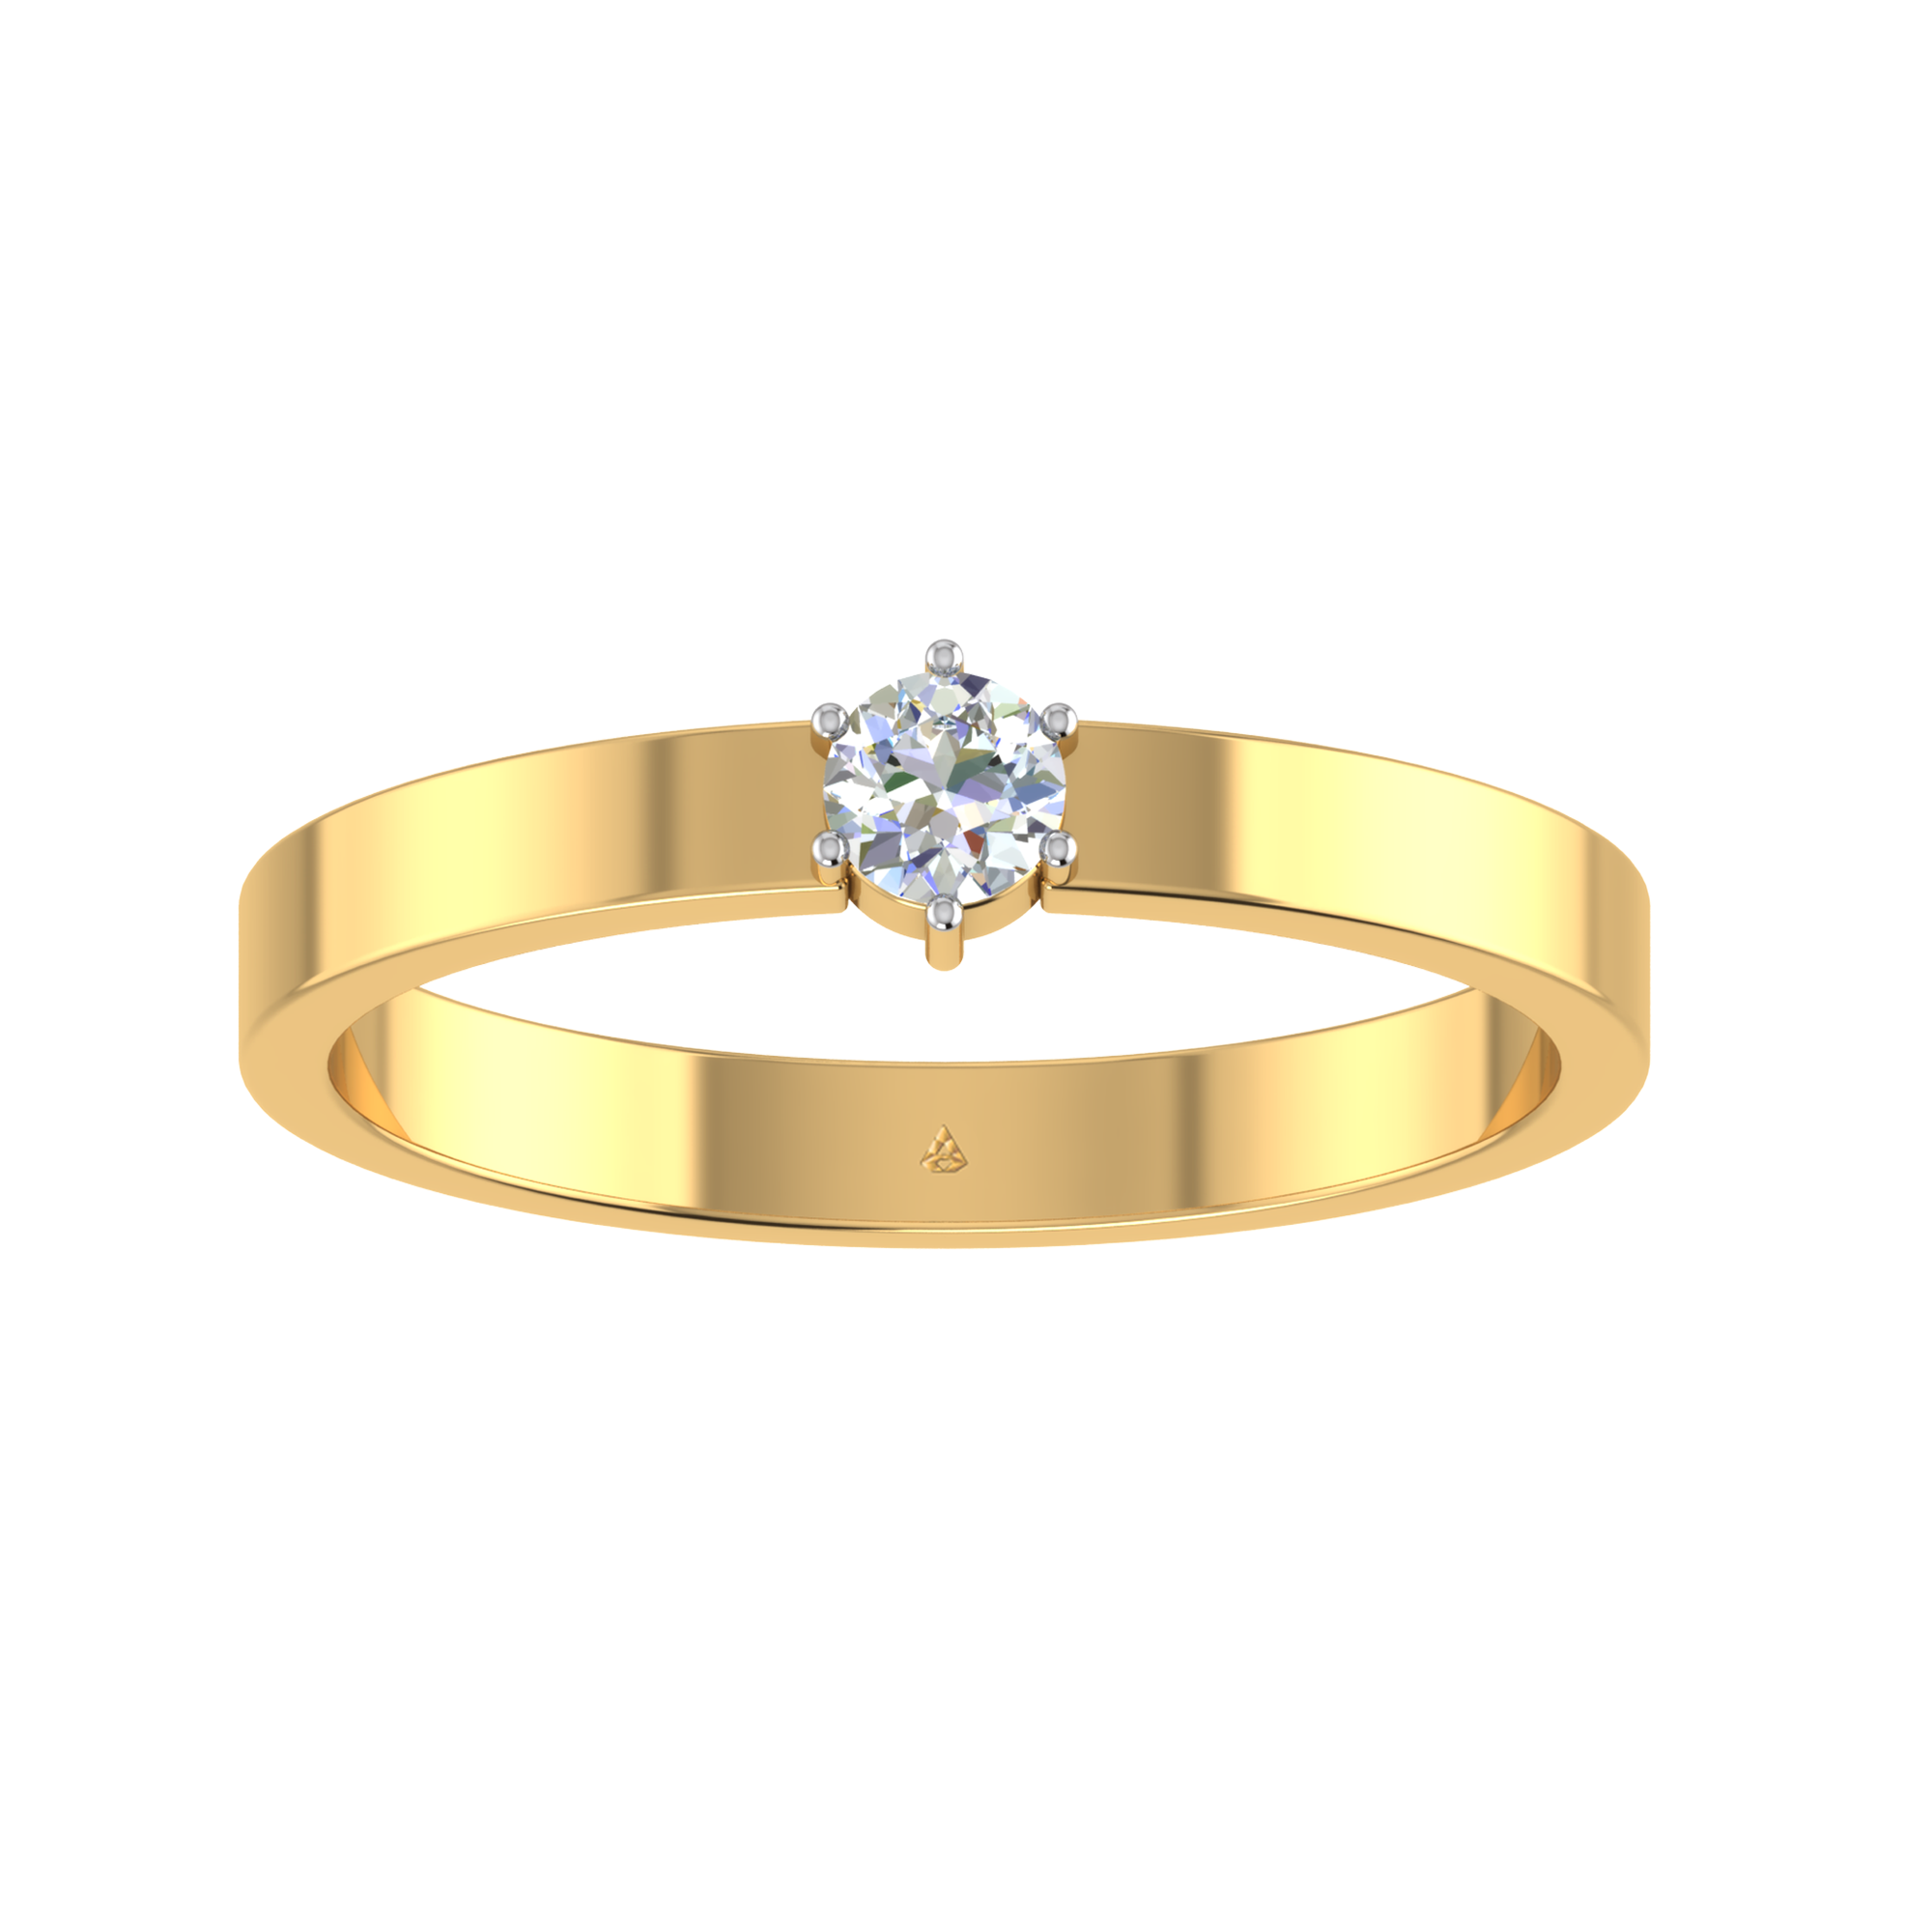 The Promise Diamond Men's Band Ring